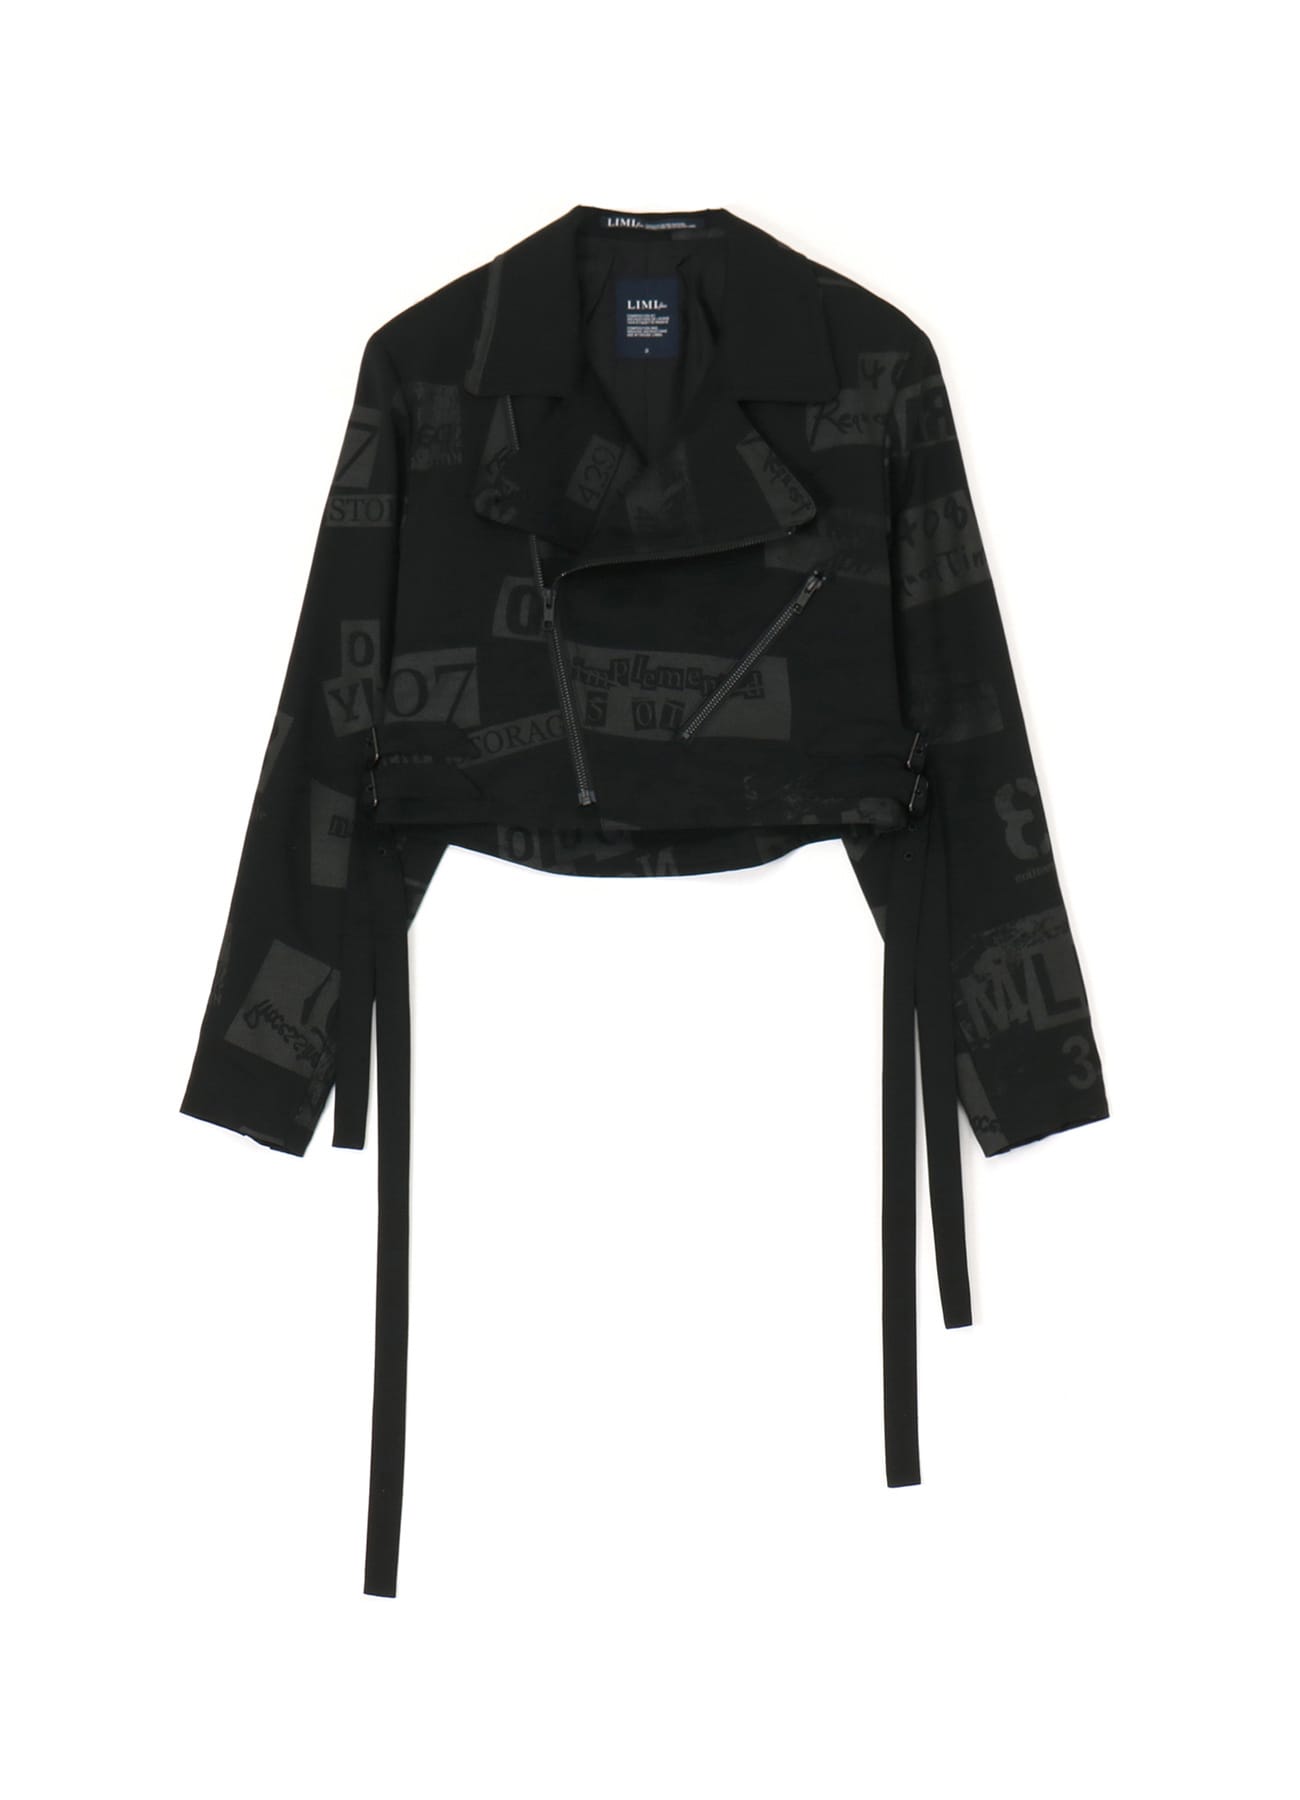 Limi Feu Tie-Dye Denim Jacket, Authentic & Vintage